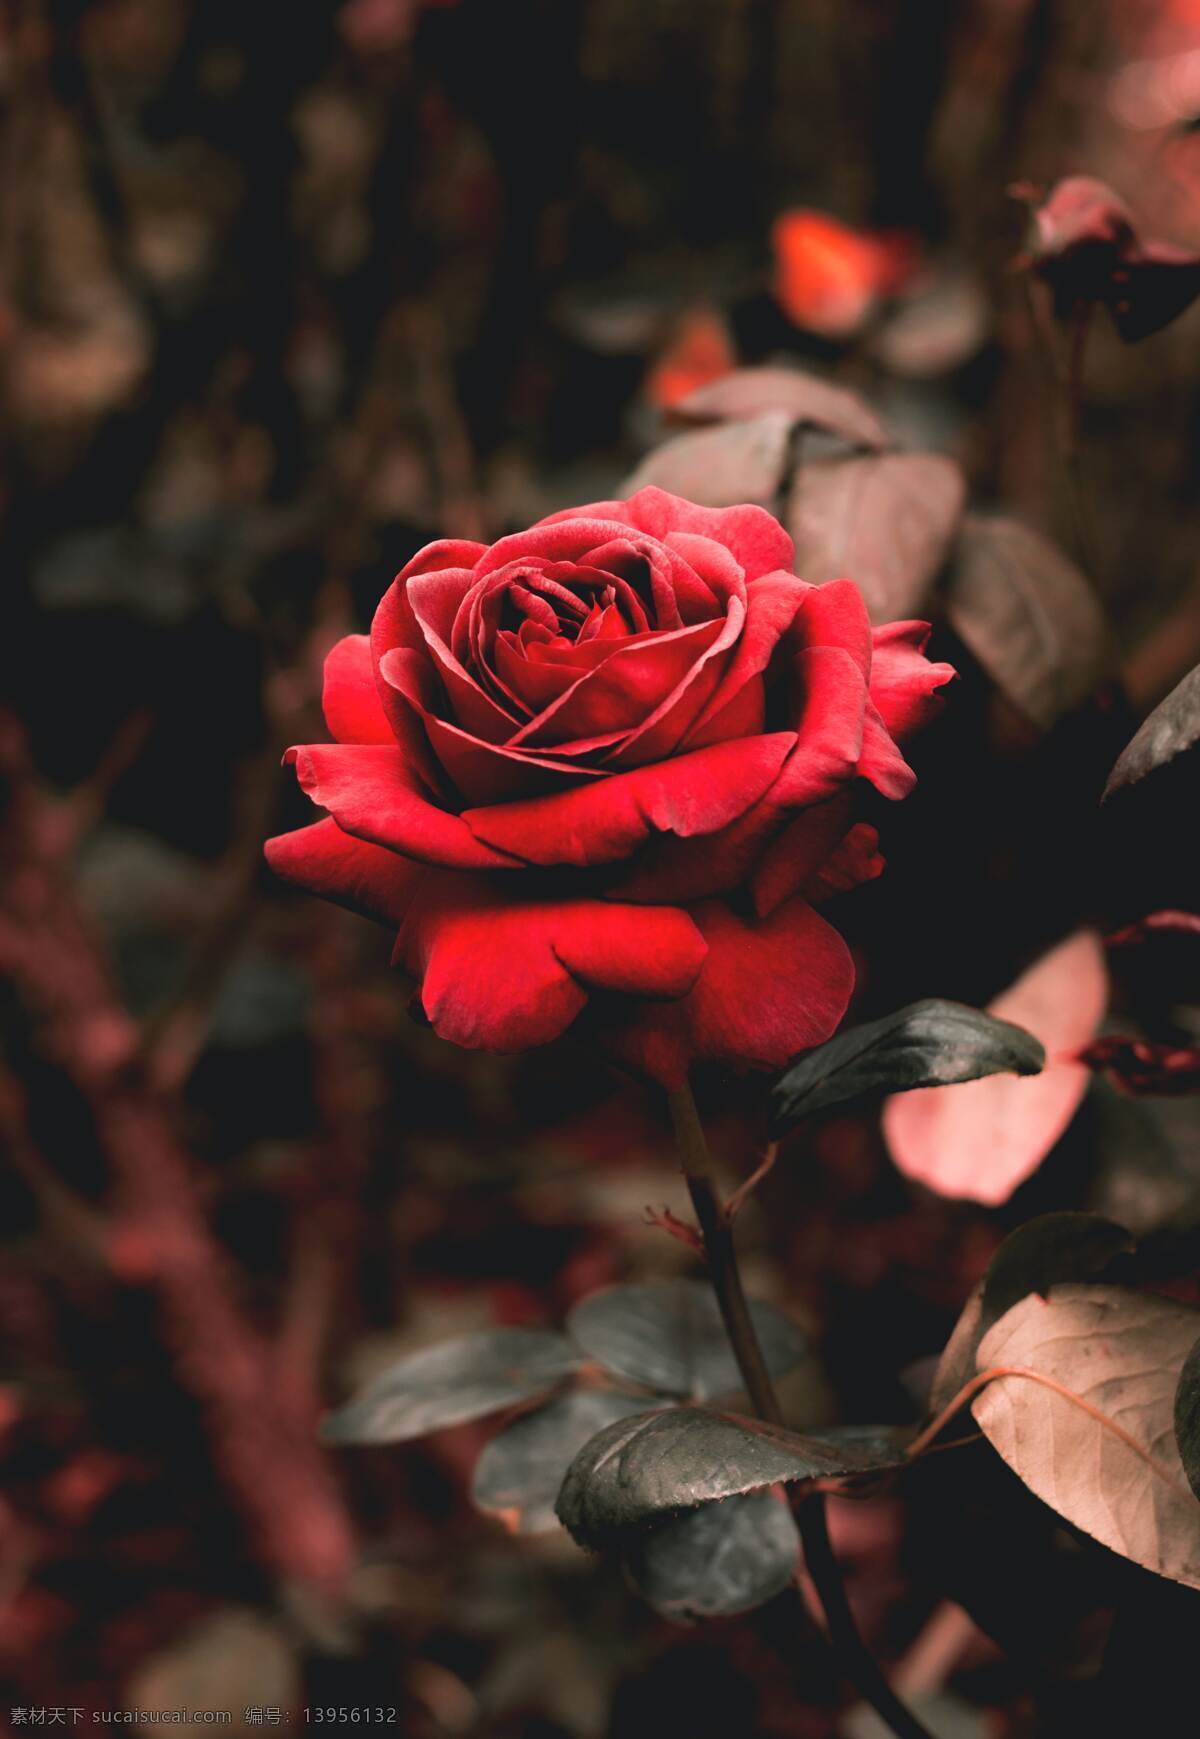 月季图片 月季 玫瑰 红玫瑰 欧月 花朵 鲜花 蔷薇 花 唯美背景 浪漫背景 小清新 节日花朵 生物世界 花草